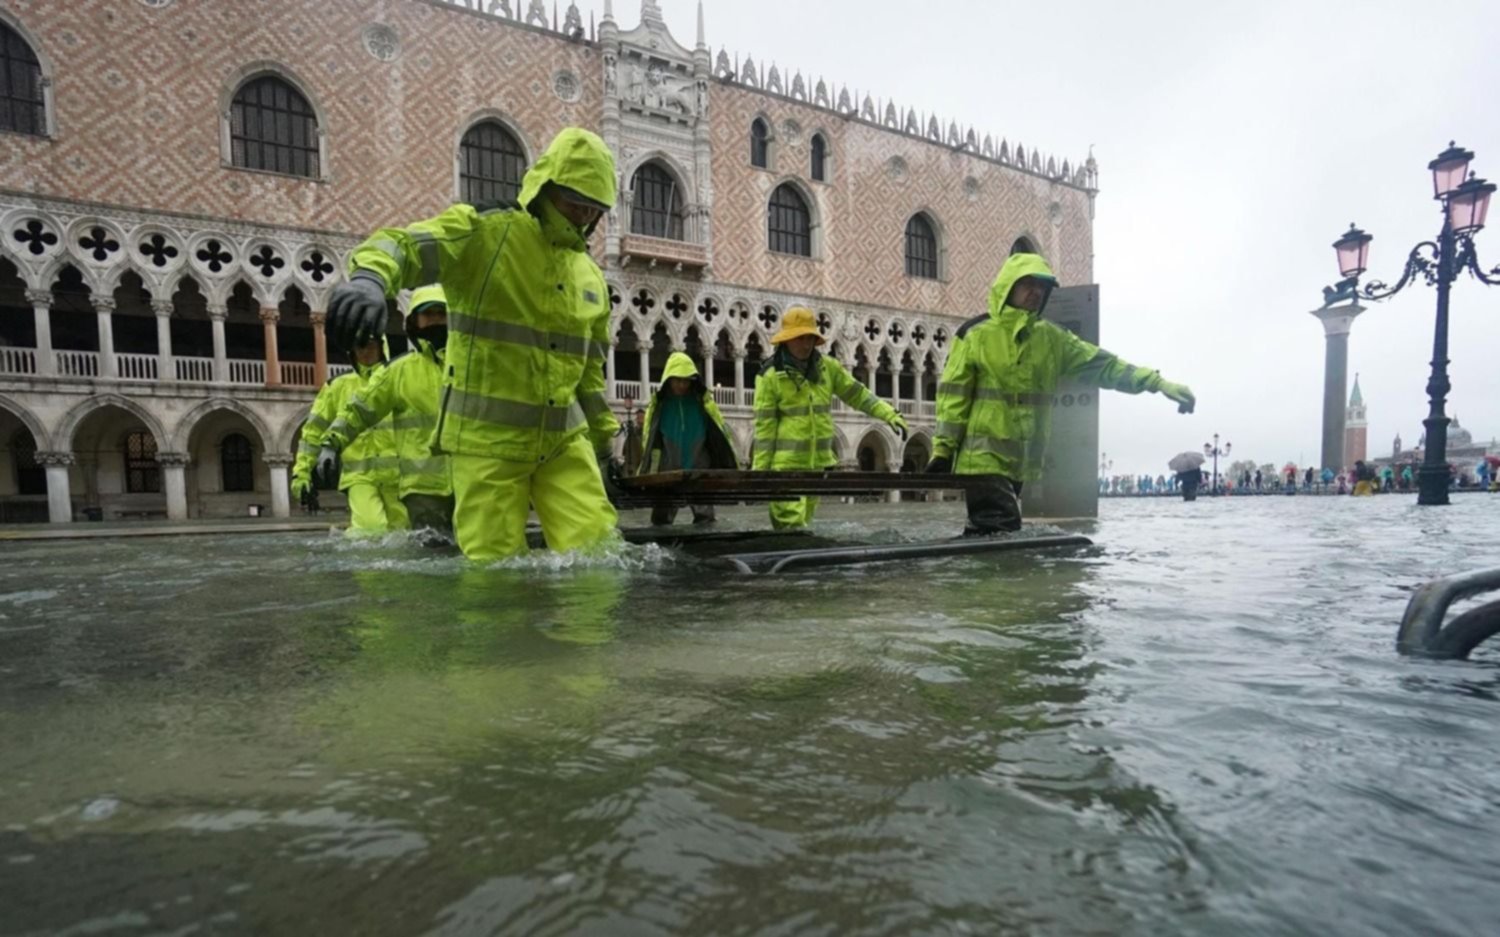 Venecia inundada con el fenómeno de la marea alta